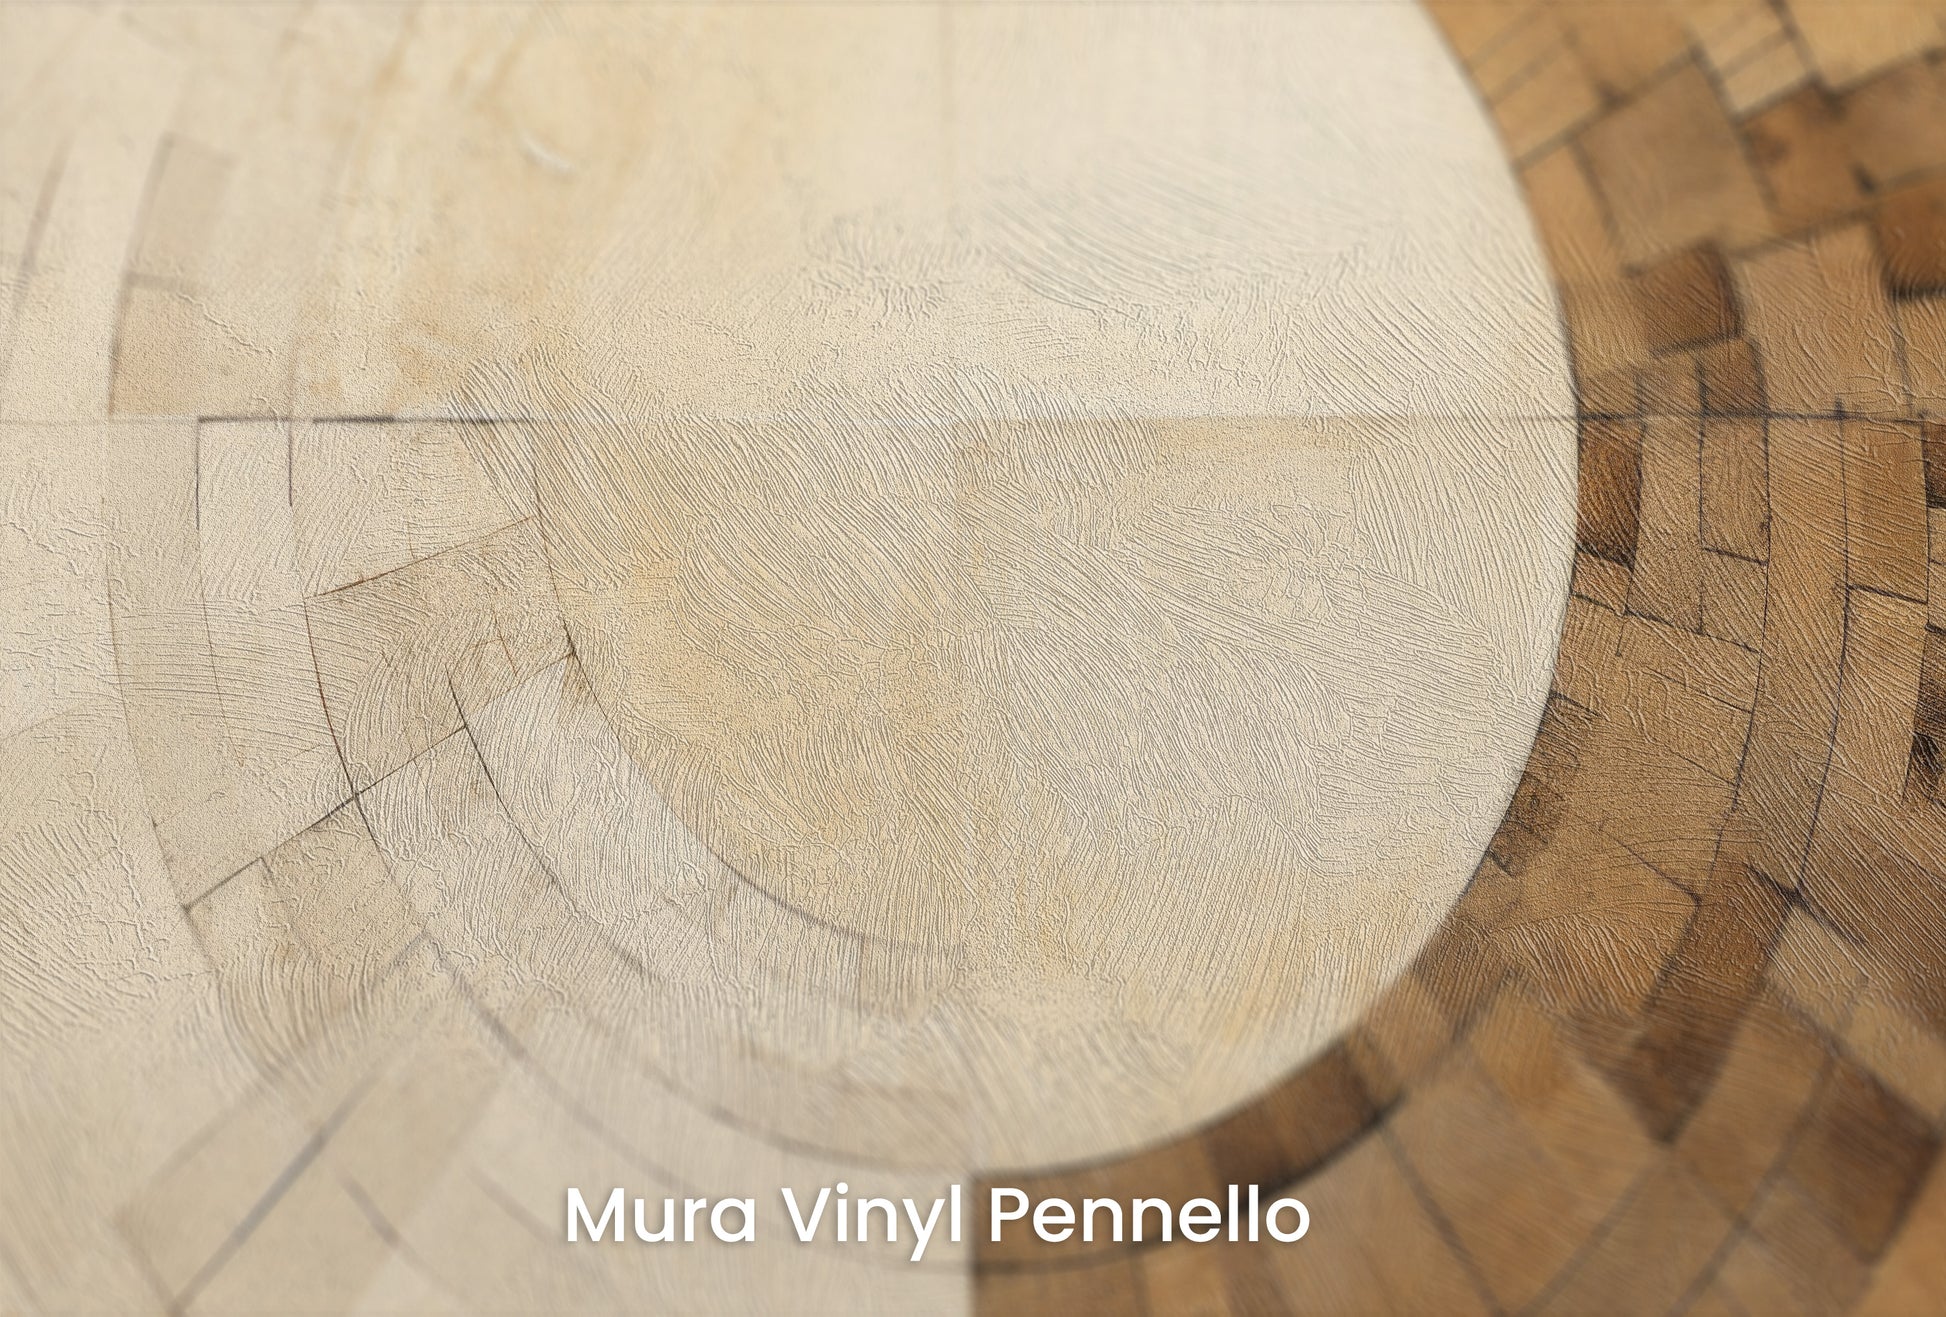 Zbliżenie na artystyczną fototapetę o nazwie SUNSTONE MAZE DESIGN na podłożu Mura Vinyl Pennello - faktura pociągnięć pędzla malarskiego.